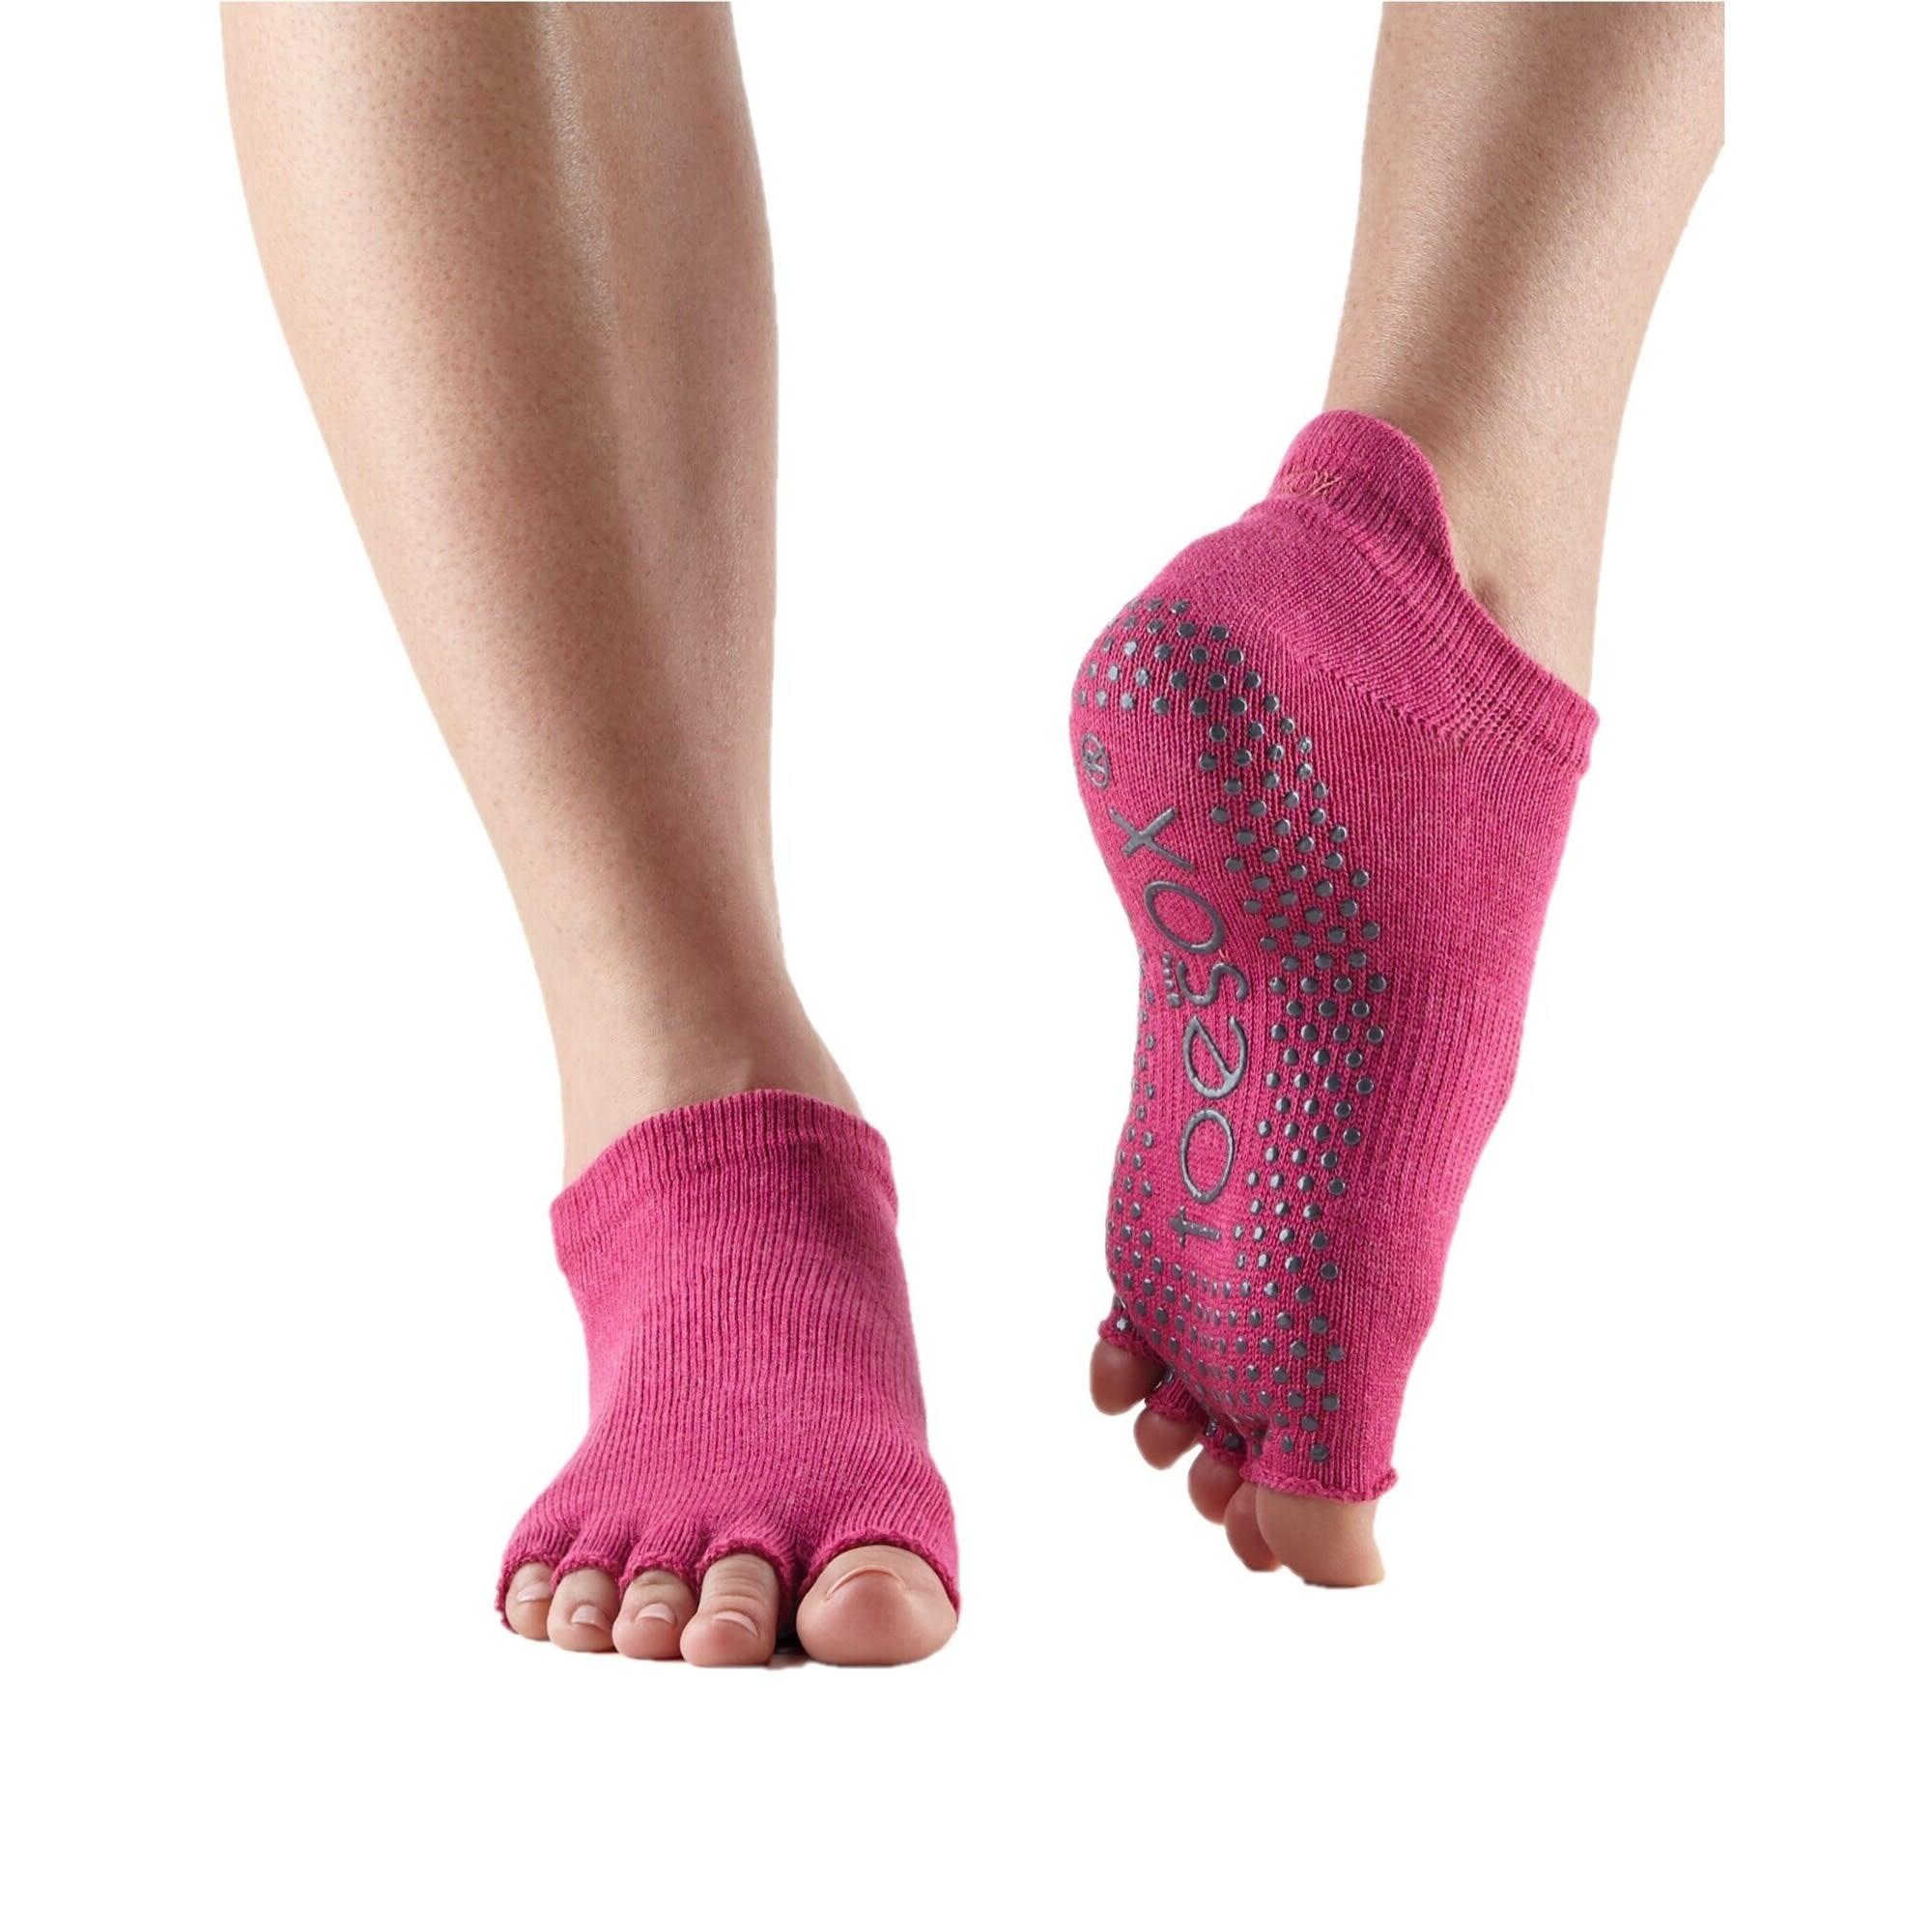 FITNESS-MAD Womens/Ladies Half Toe Socks (Raspberry)